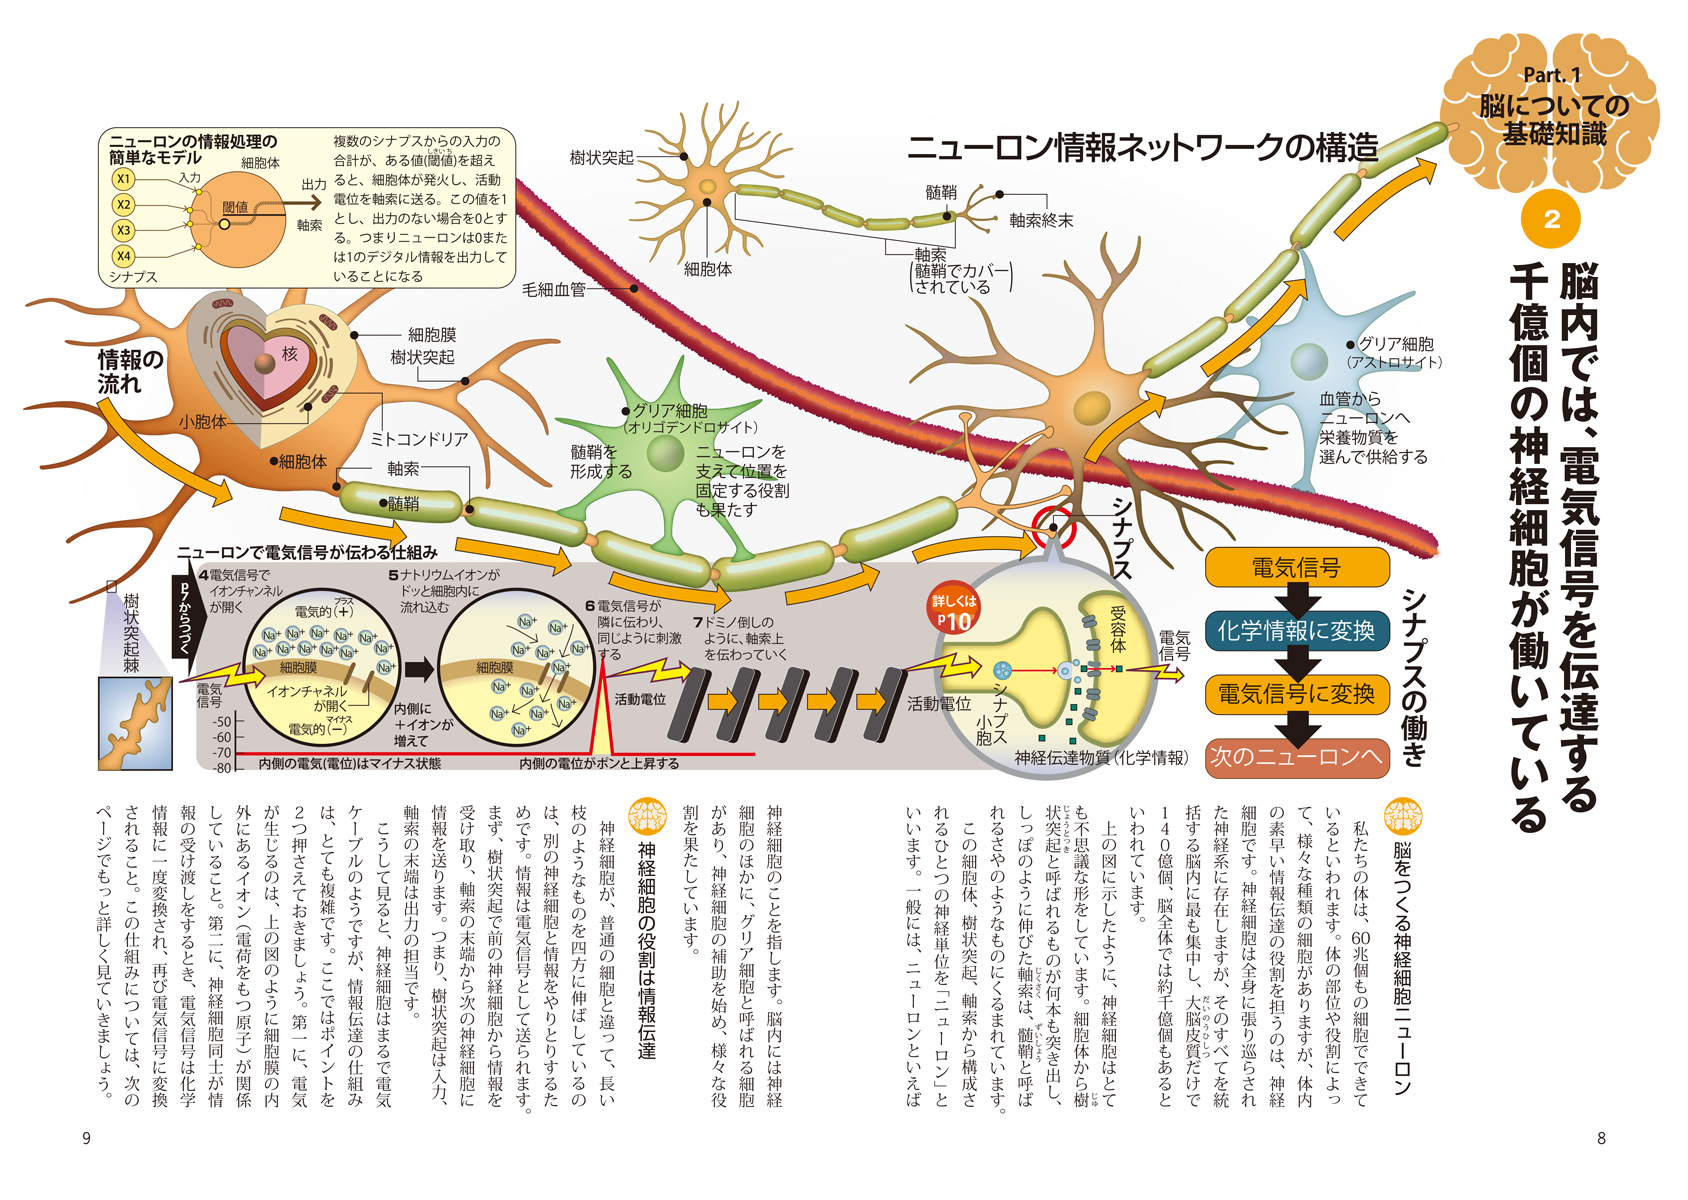 『図解でわかる 14歳から知る人類の脳科学、その現在と未来』ページサンプル